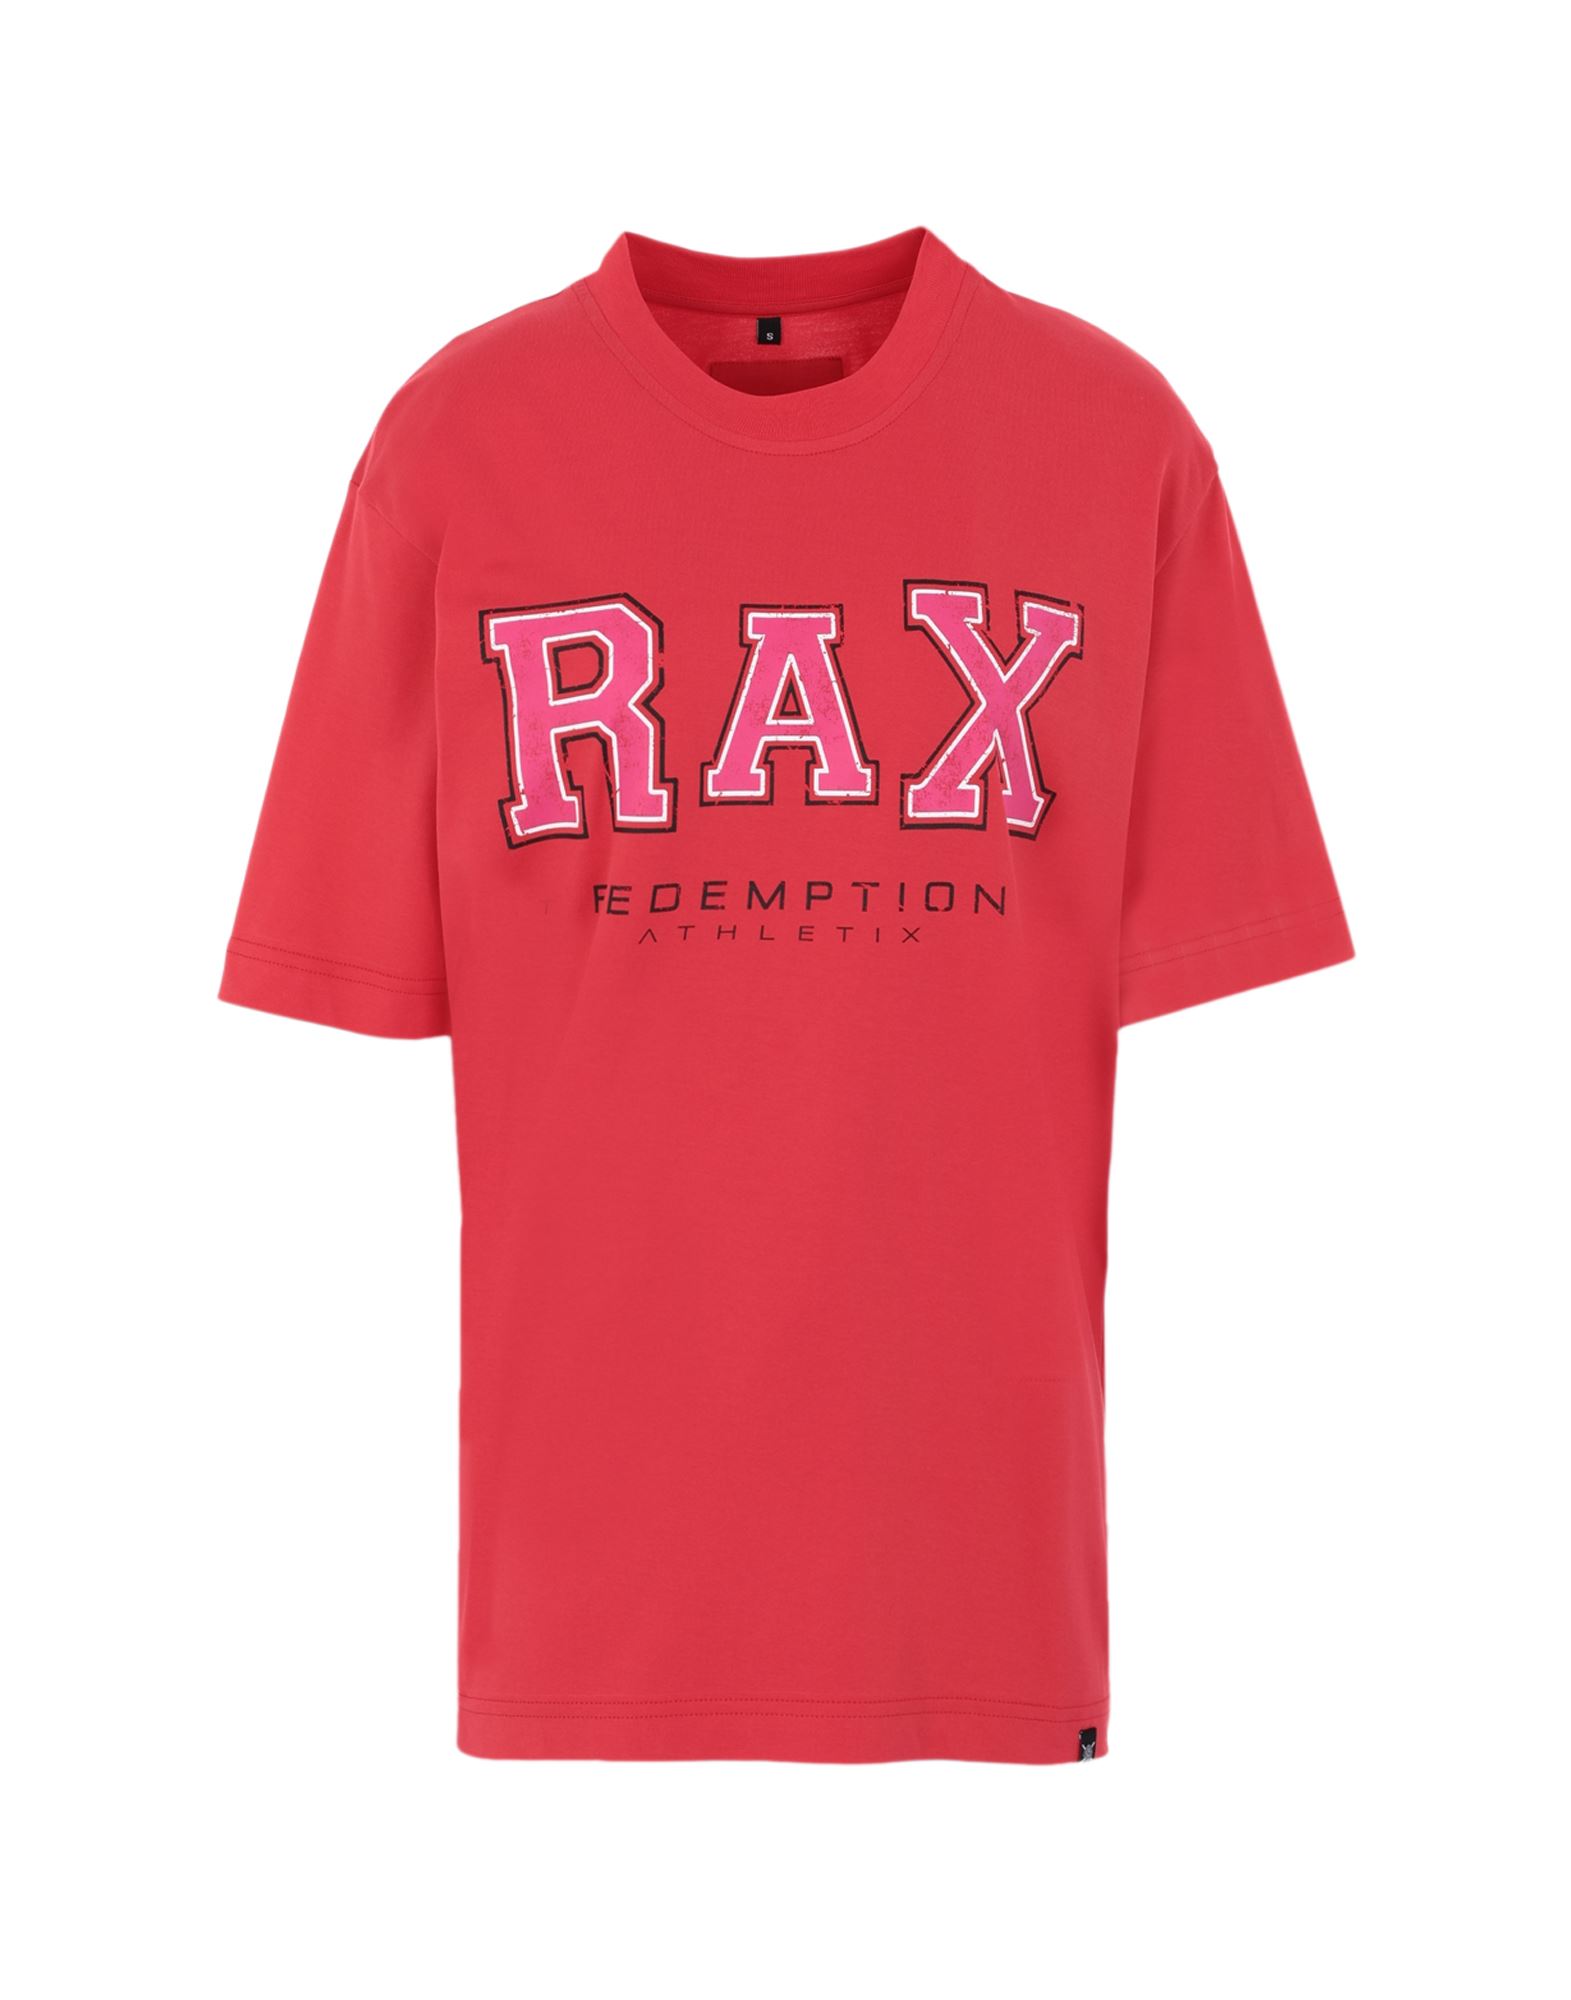 Redemption Athletix T-shirts In Red | ModeSens